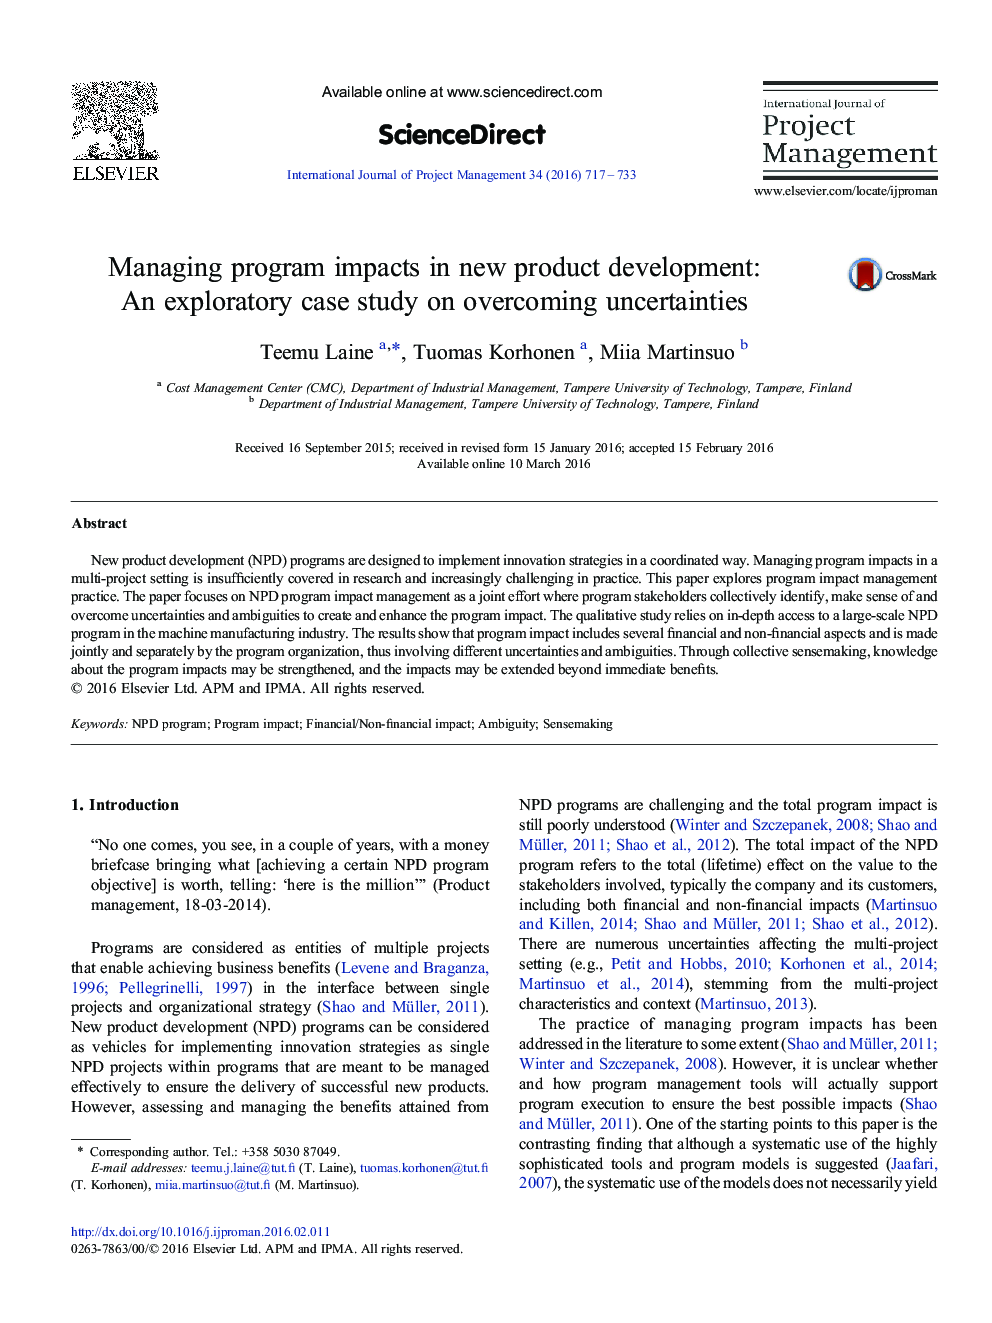 مدیریت اثرات برنامه در توسعه محصول جدید: یک مطالعه موردی اکتشافی در عدم قطعیت غلبه 